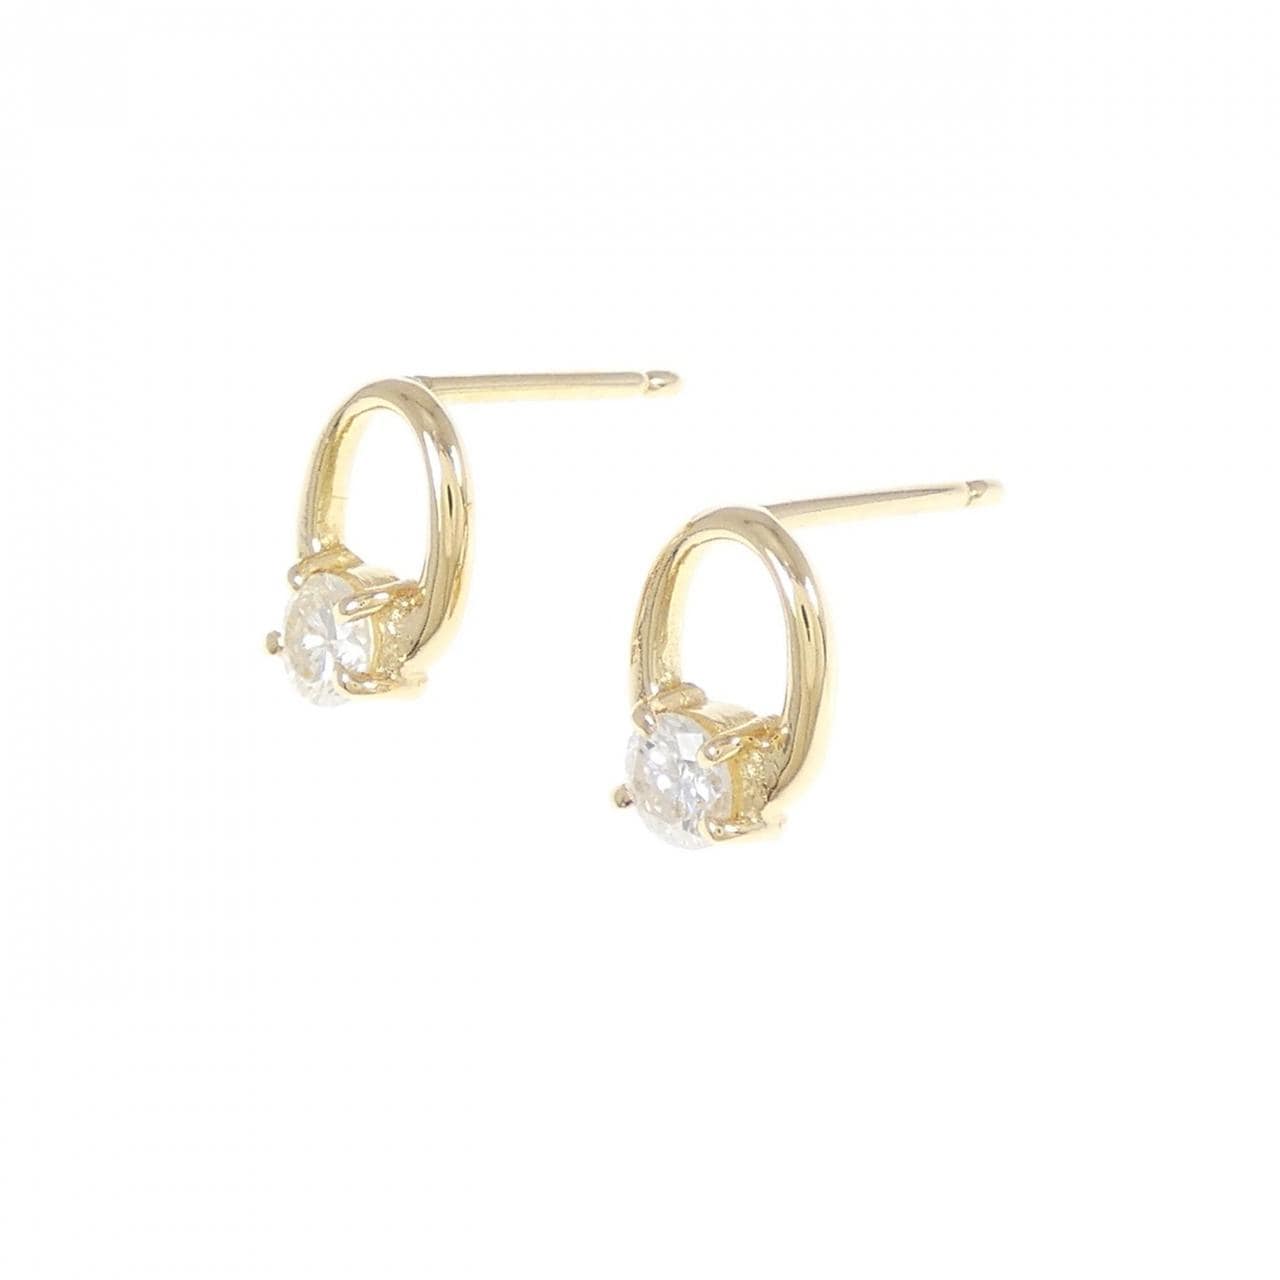 K18YG Diamond earrings 0.44CT